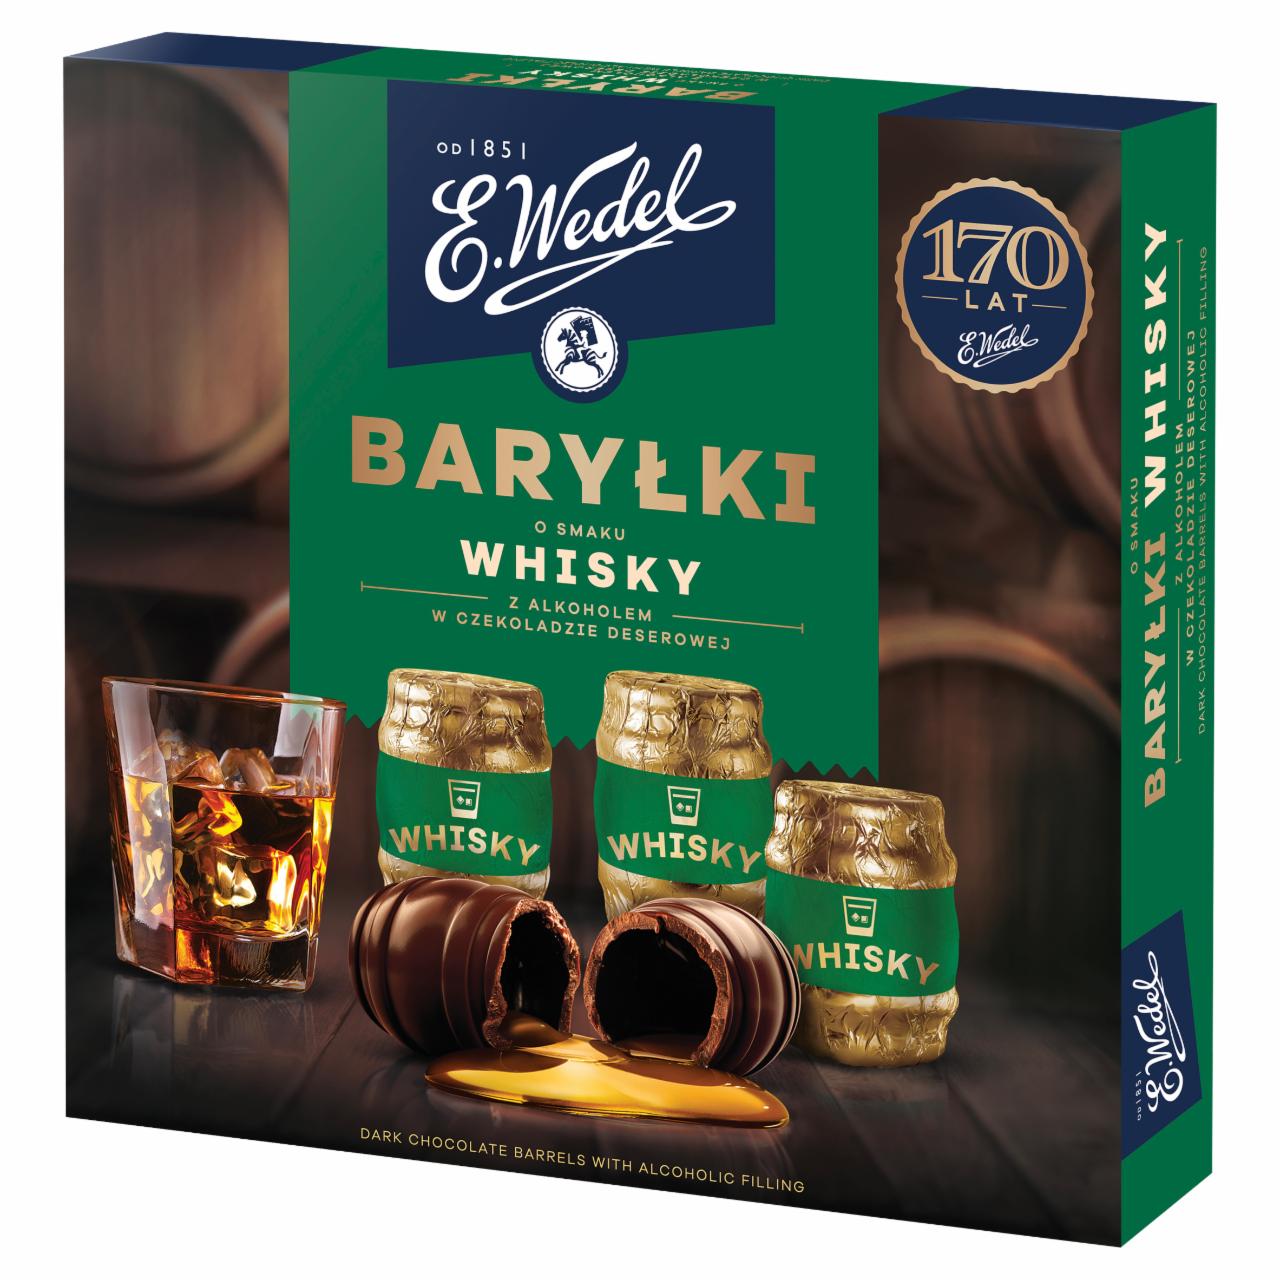 Zdjęcia - E. Wedel Baryłki o smaku whisky z alkoholem w czekoladzie deserowej 200 g